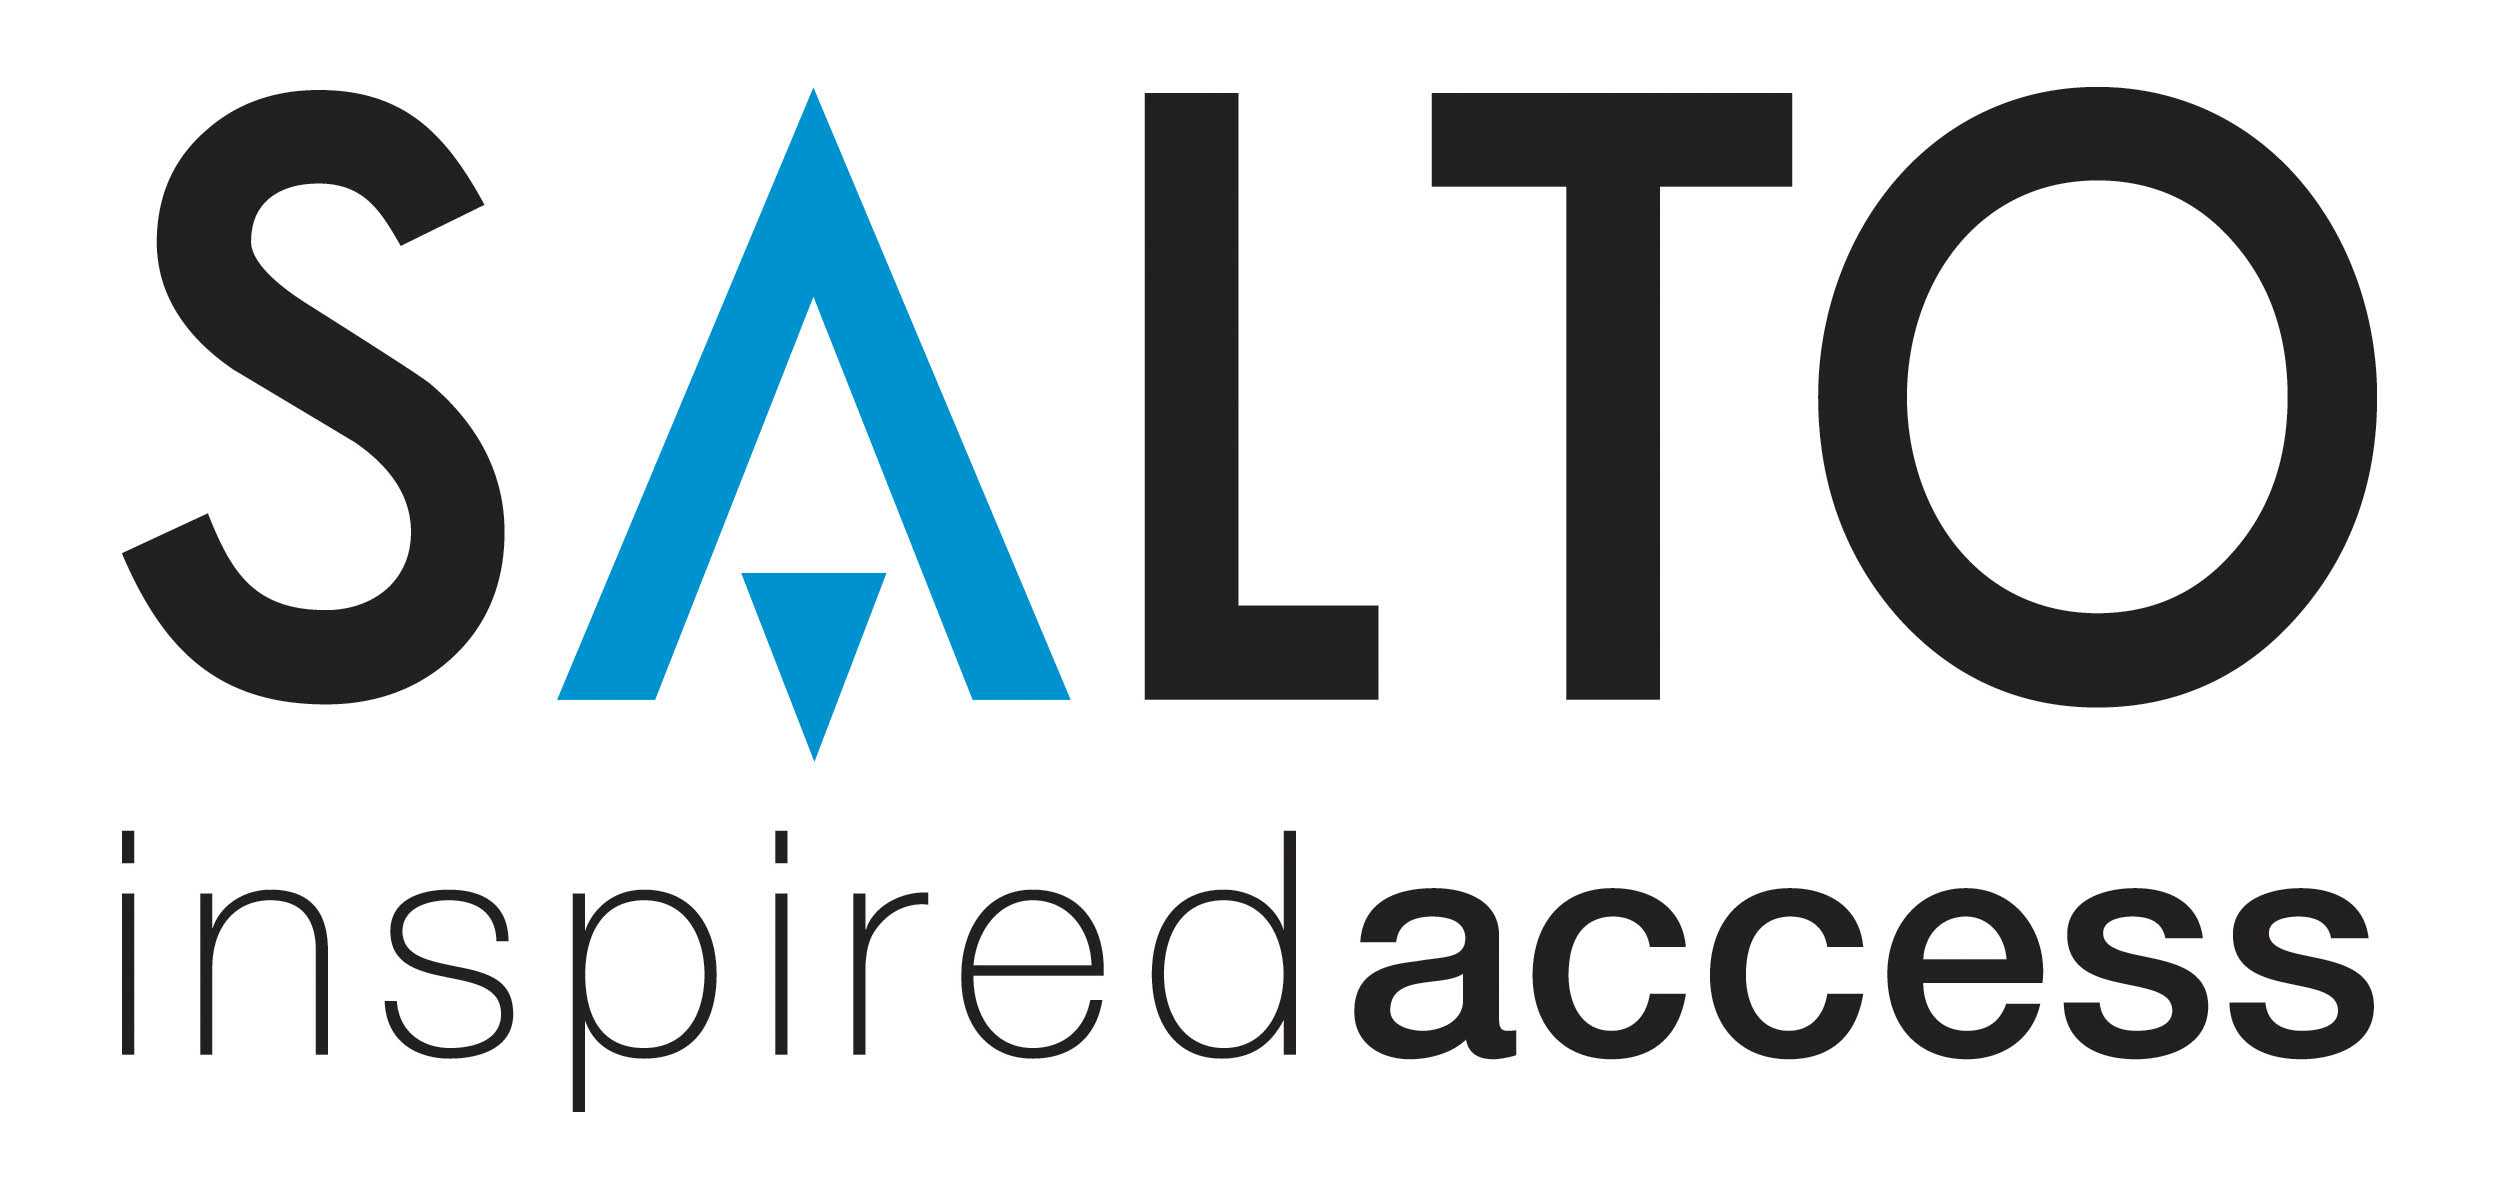 SALTO_inspired_access_LOGO